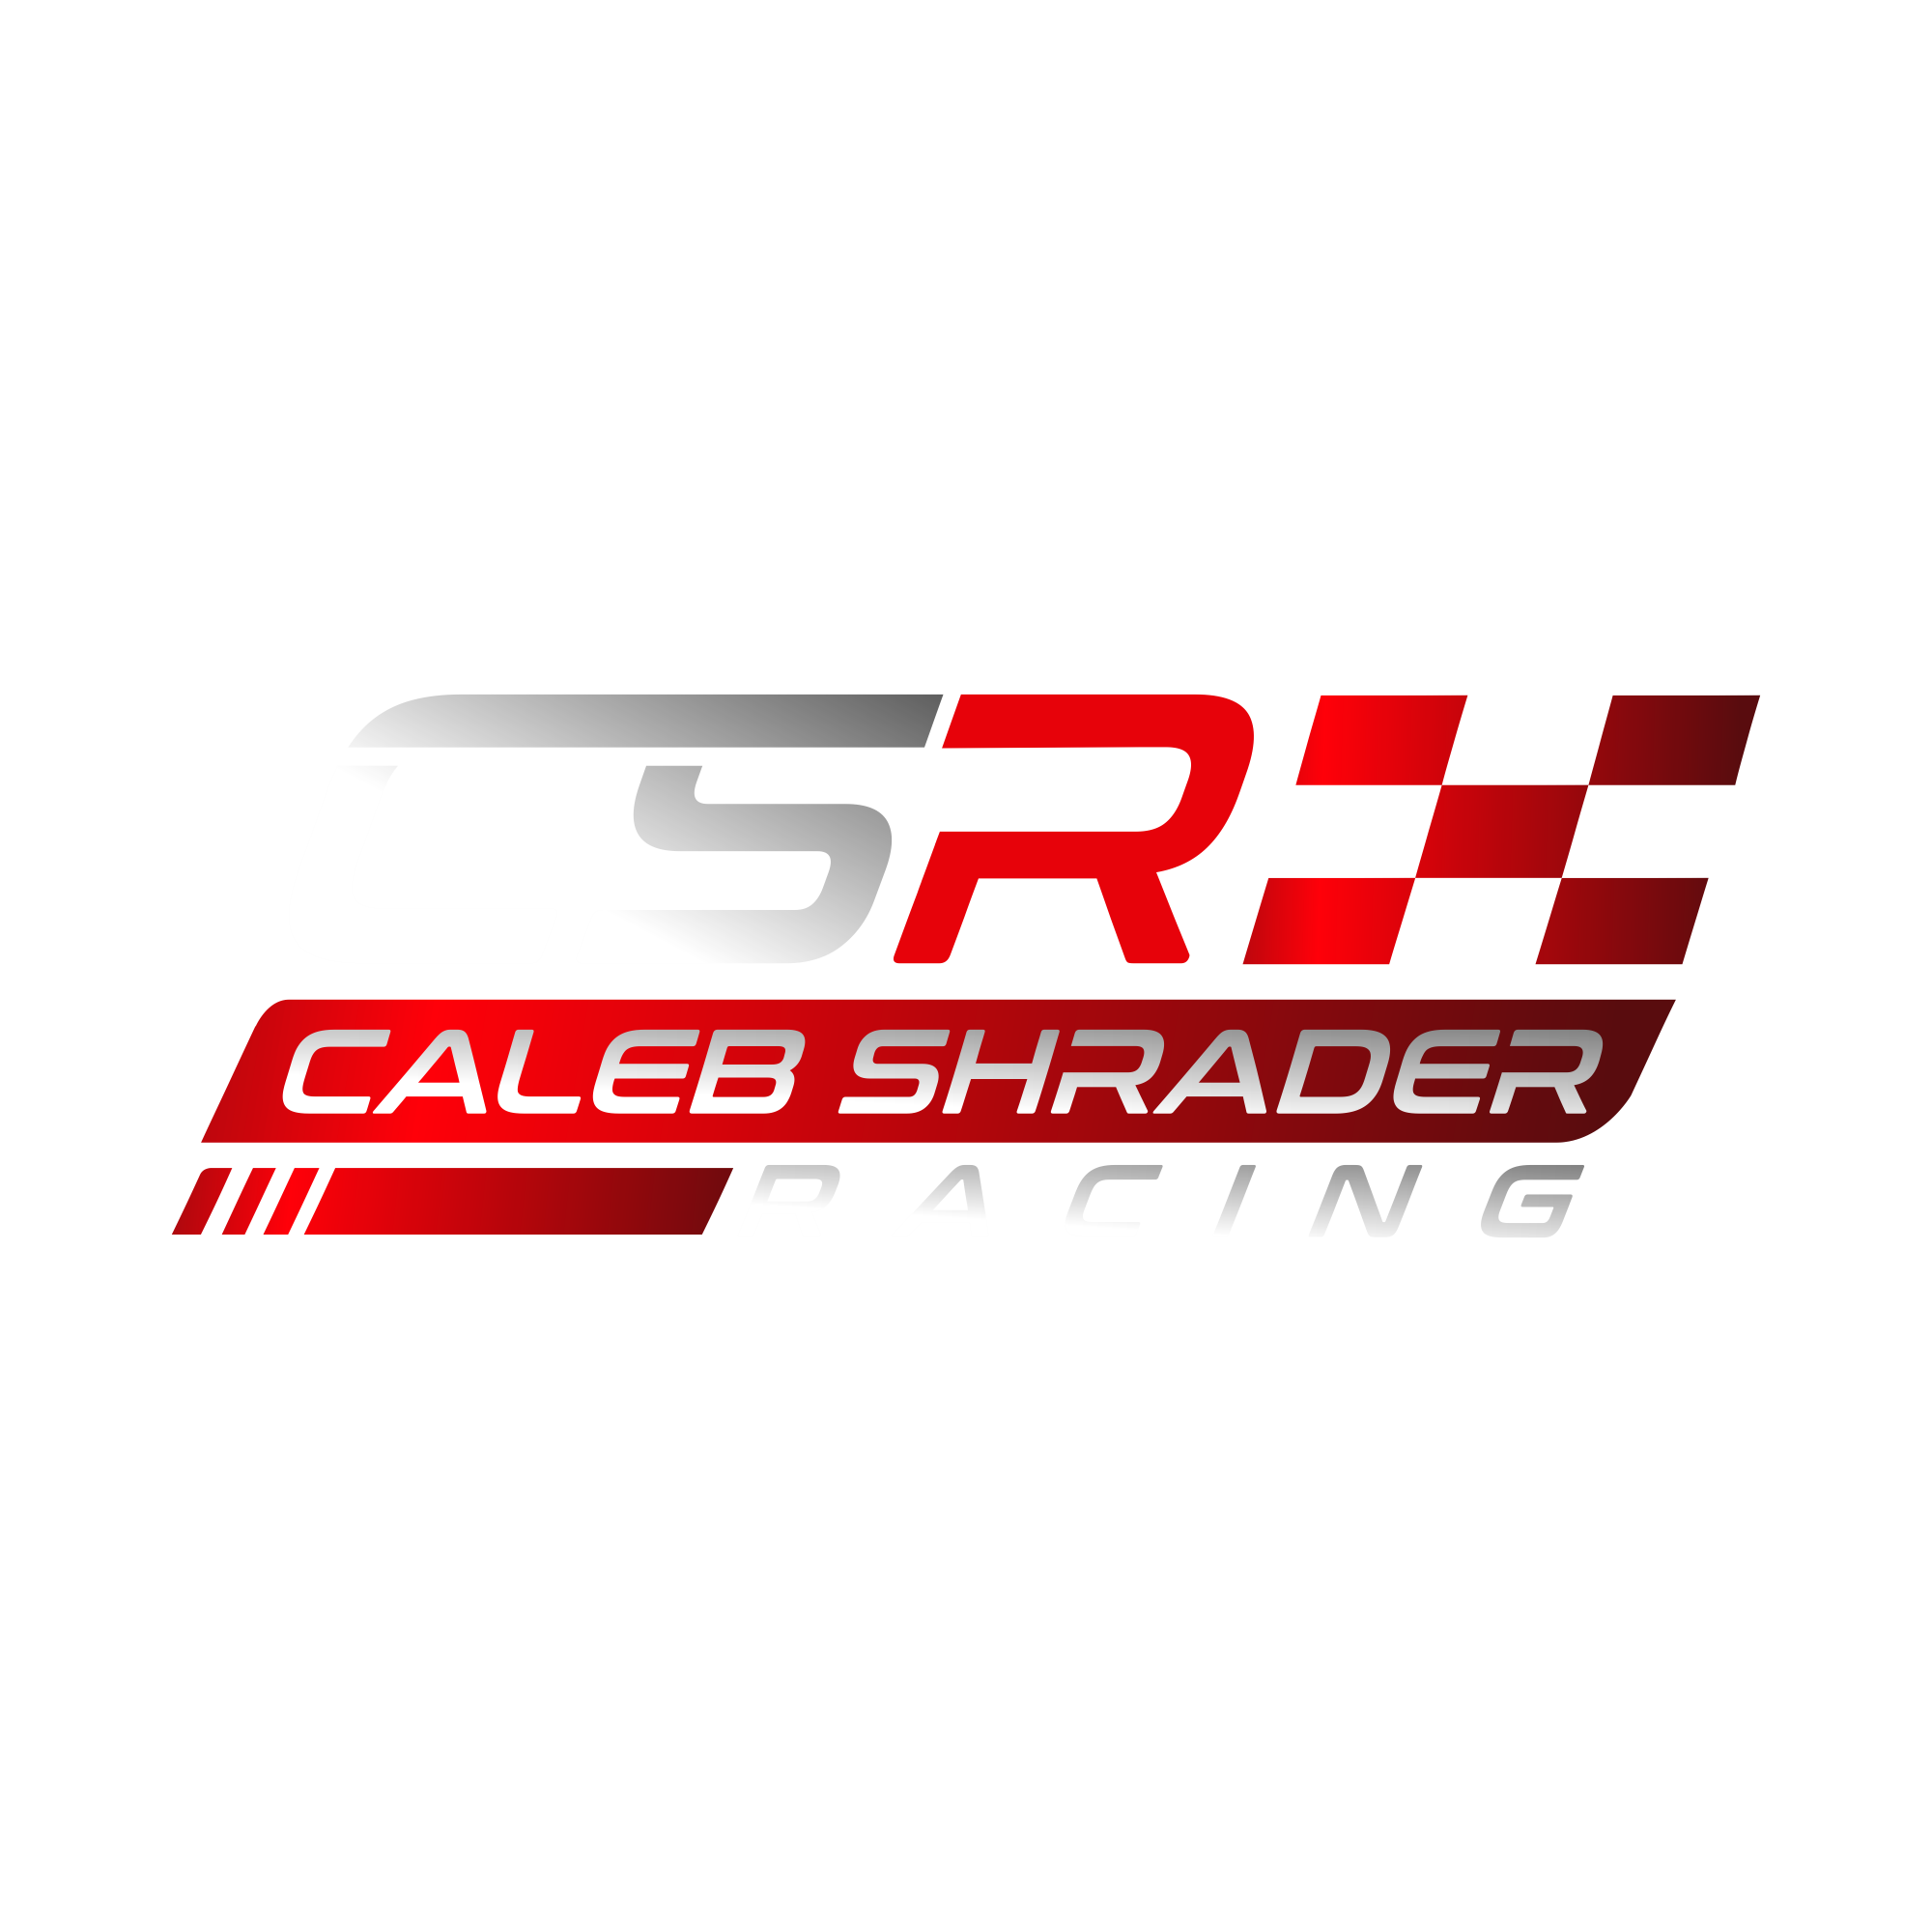 Caleb Shrader Racing